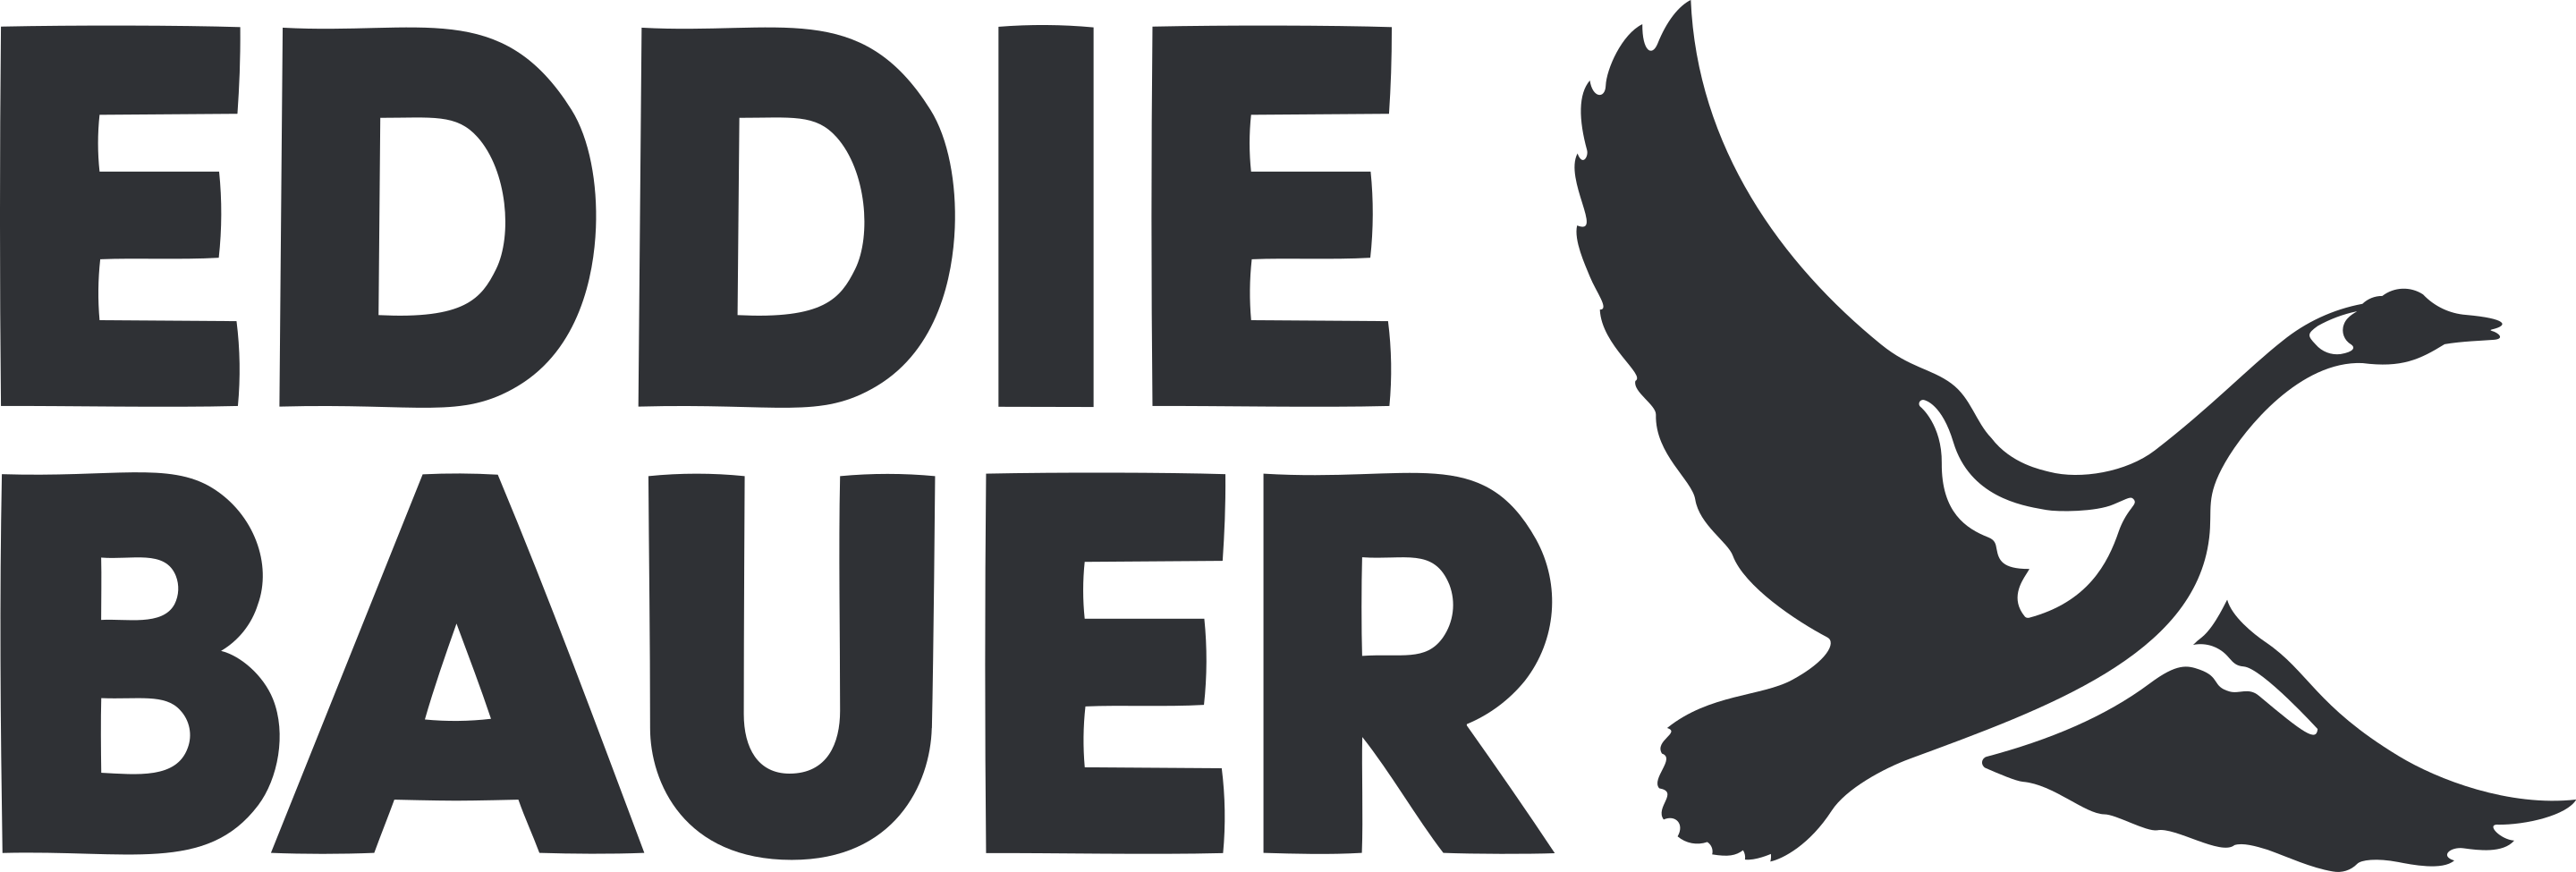 Eddie_Bauer_Logo.svg.png